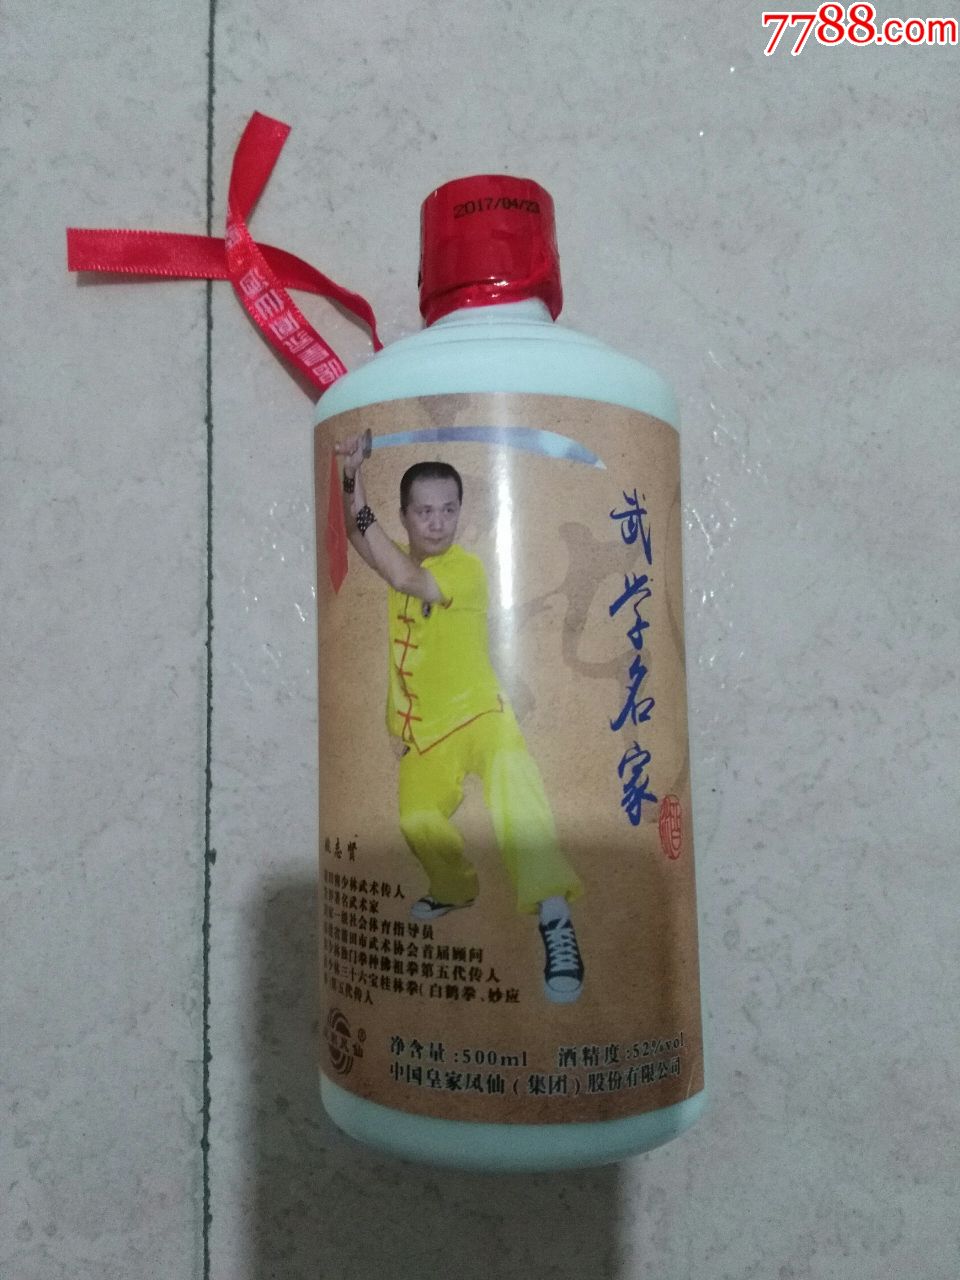 内供酒(52度)空的酒瓶1个5品$19899莆田市武术协会名誉会长姚志贤的